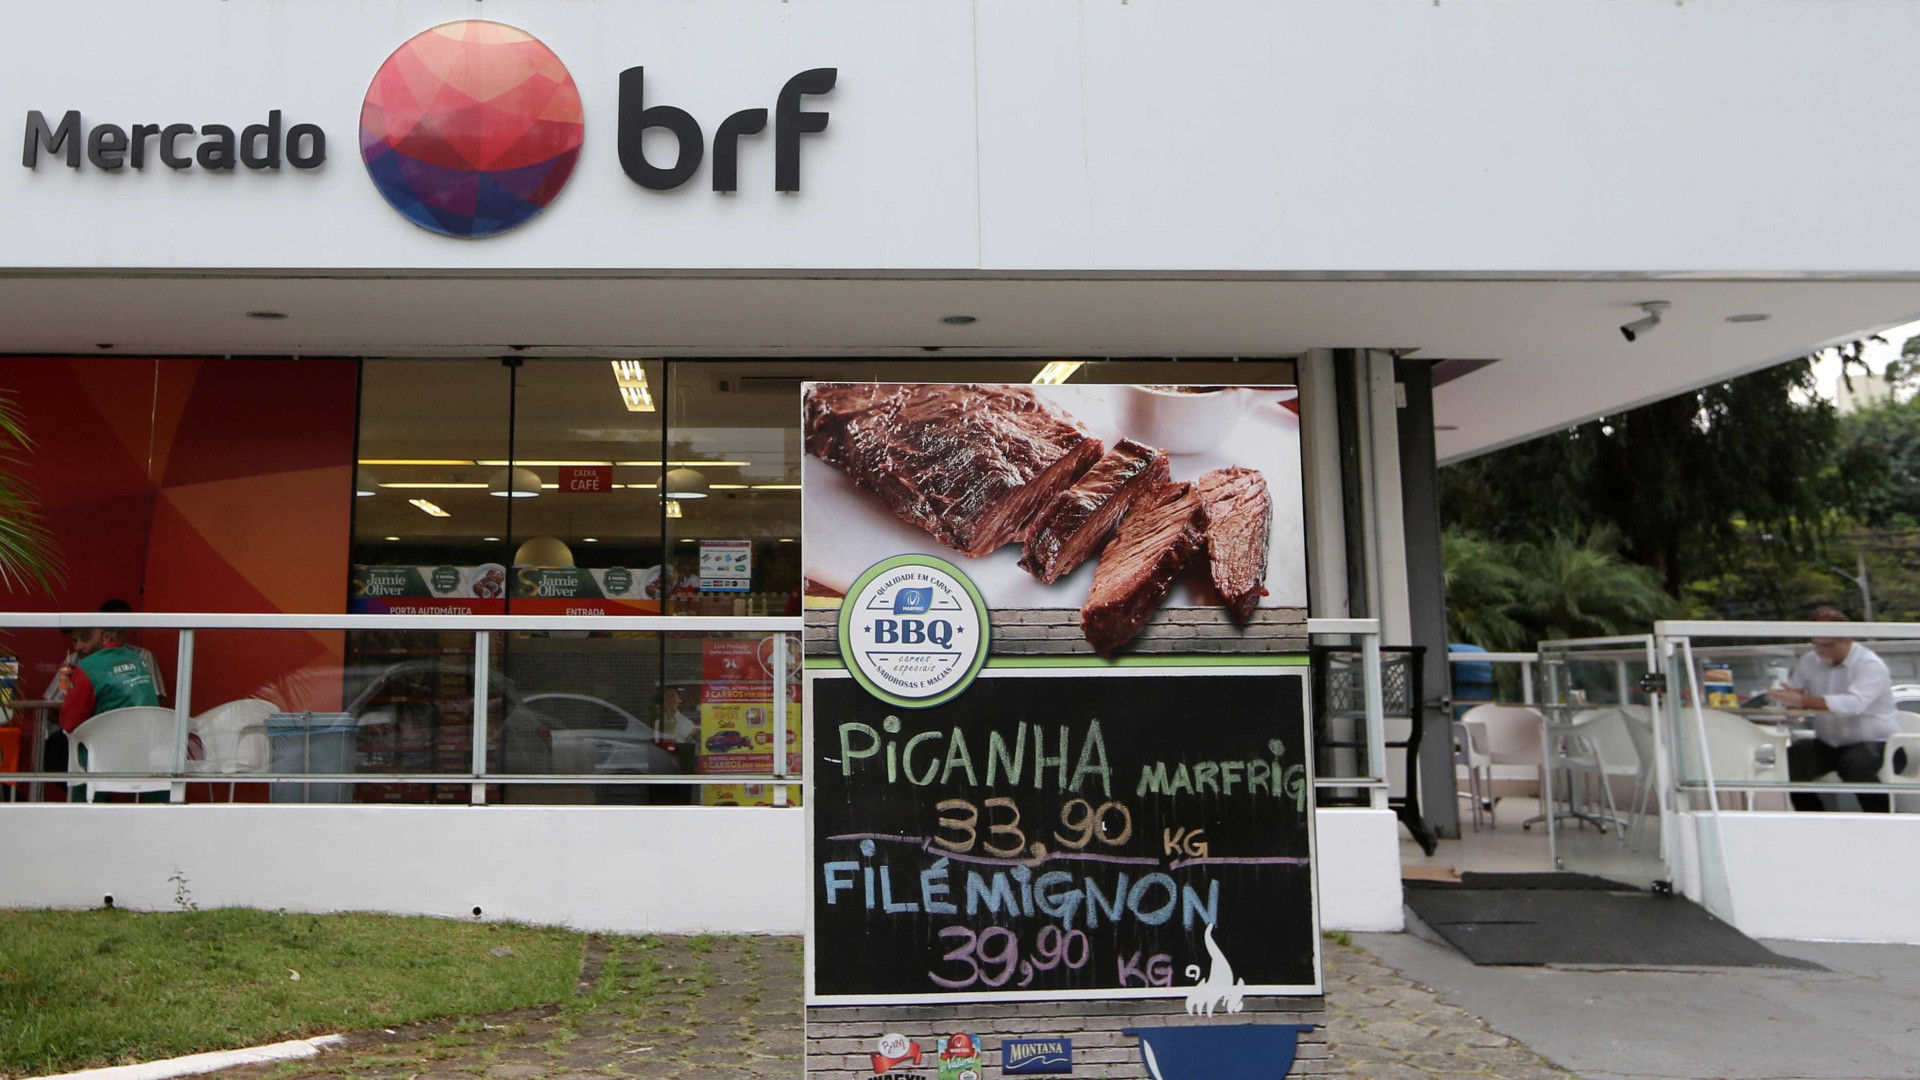 BRF diz que nunca vendeu carne
 podre e que nunca foi acusada disso